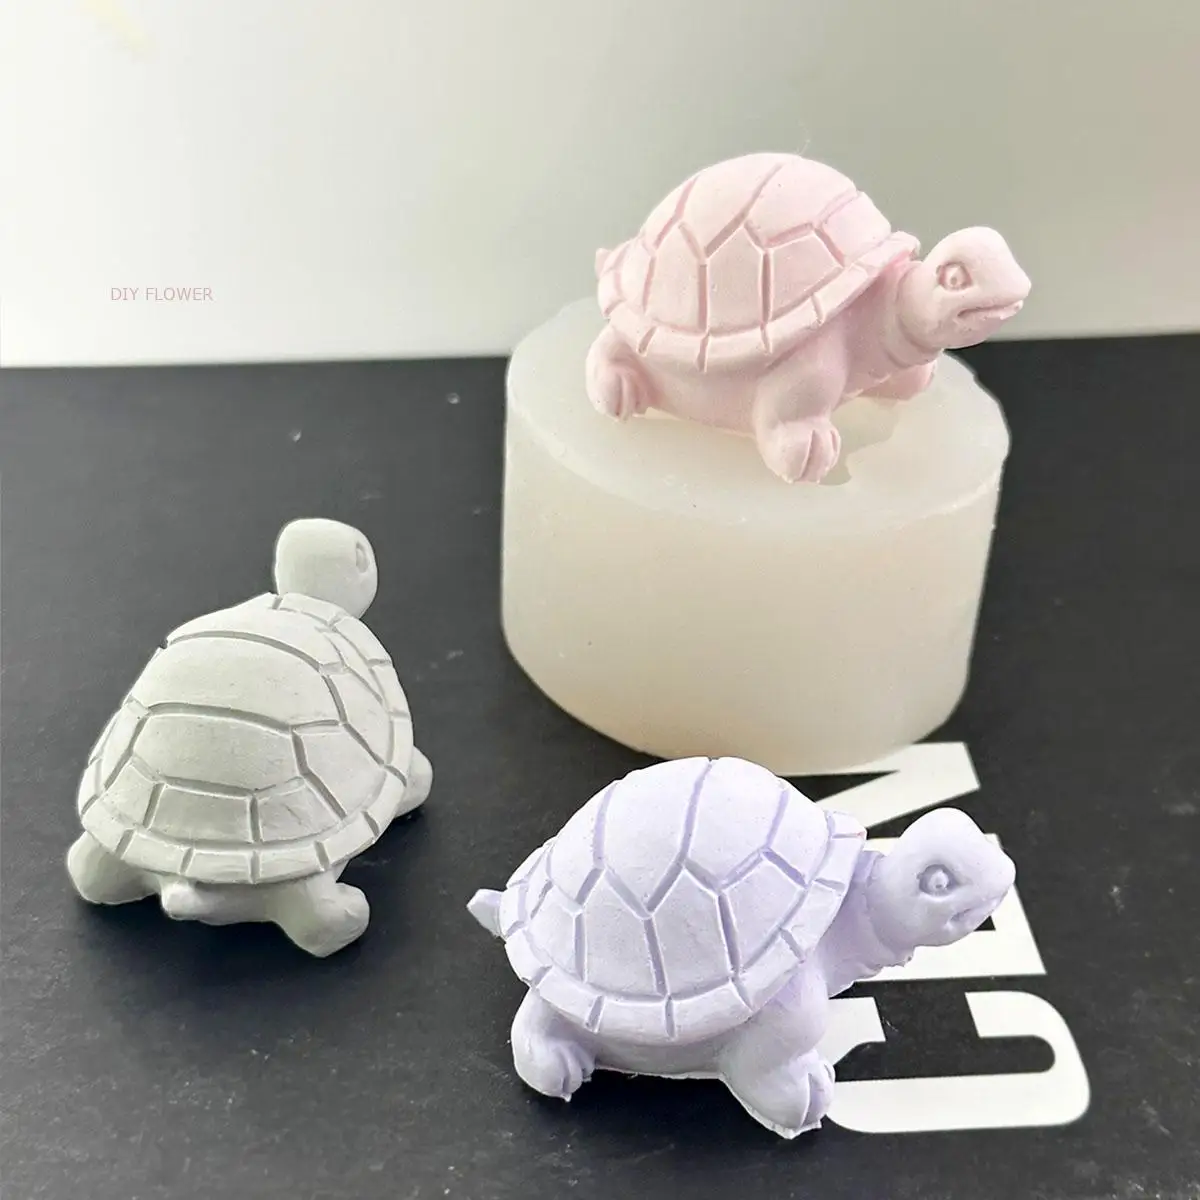 

Силиконовая форма в виде черепахи для самостоятельного изготовления ароматизированных свечей, штукатурных украшений, форма для рукоделия из смолы, для изготовления помадки, торта